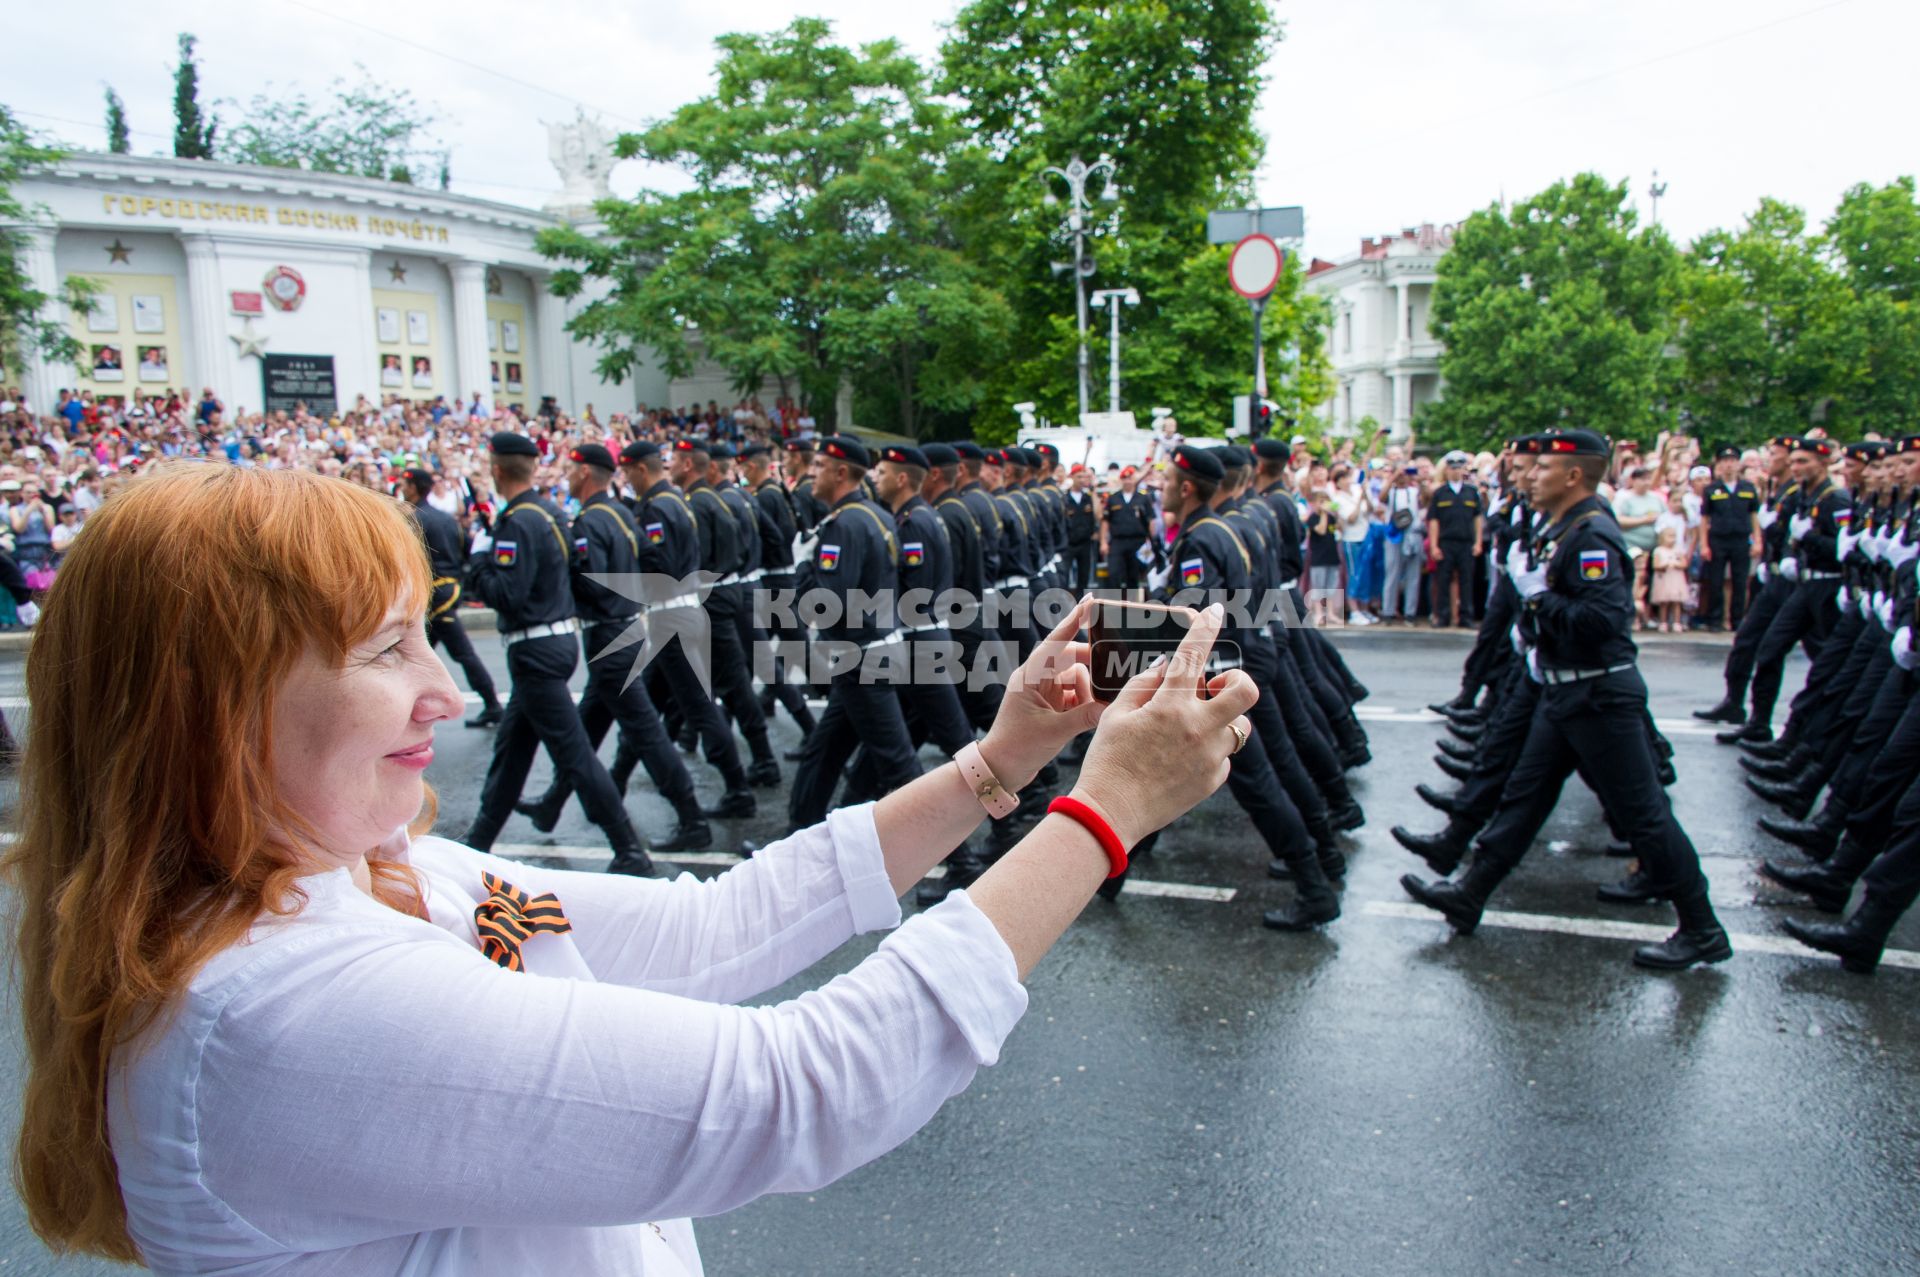 Крым, Севастополь. Женщина фотографирует на военном параде в ознаменование 75-летия Победы в Великой Отечественной войне 1941-1945 годов.